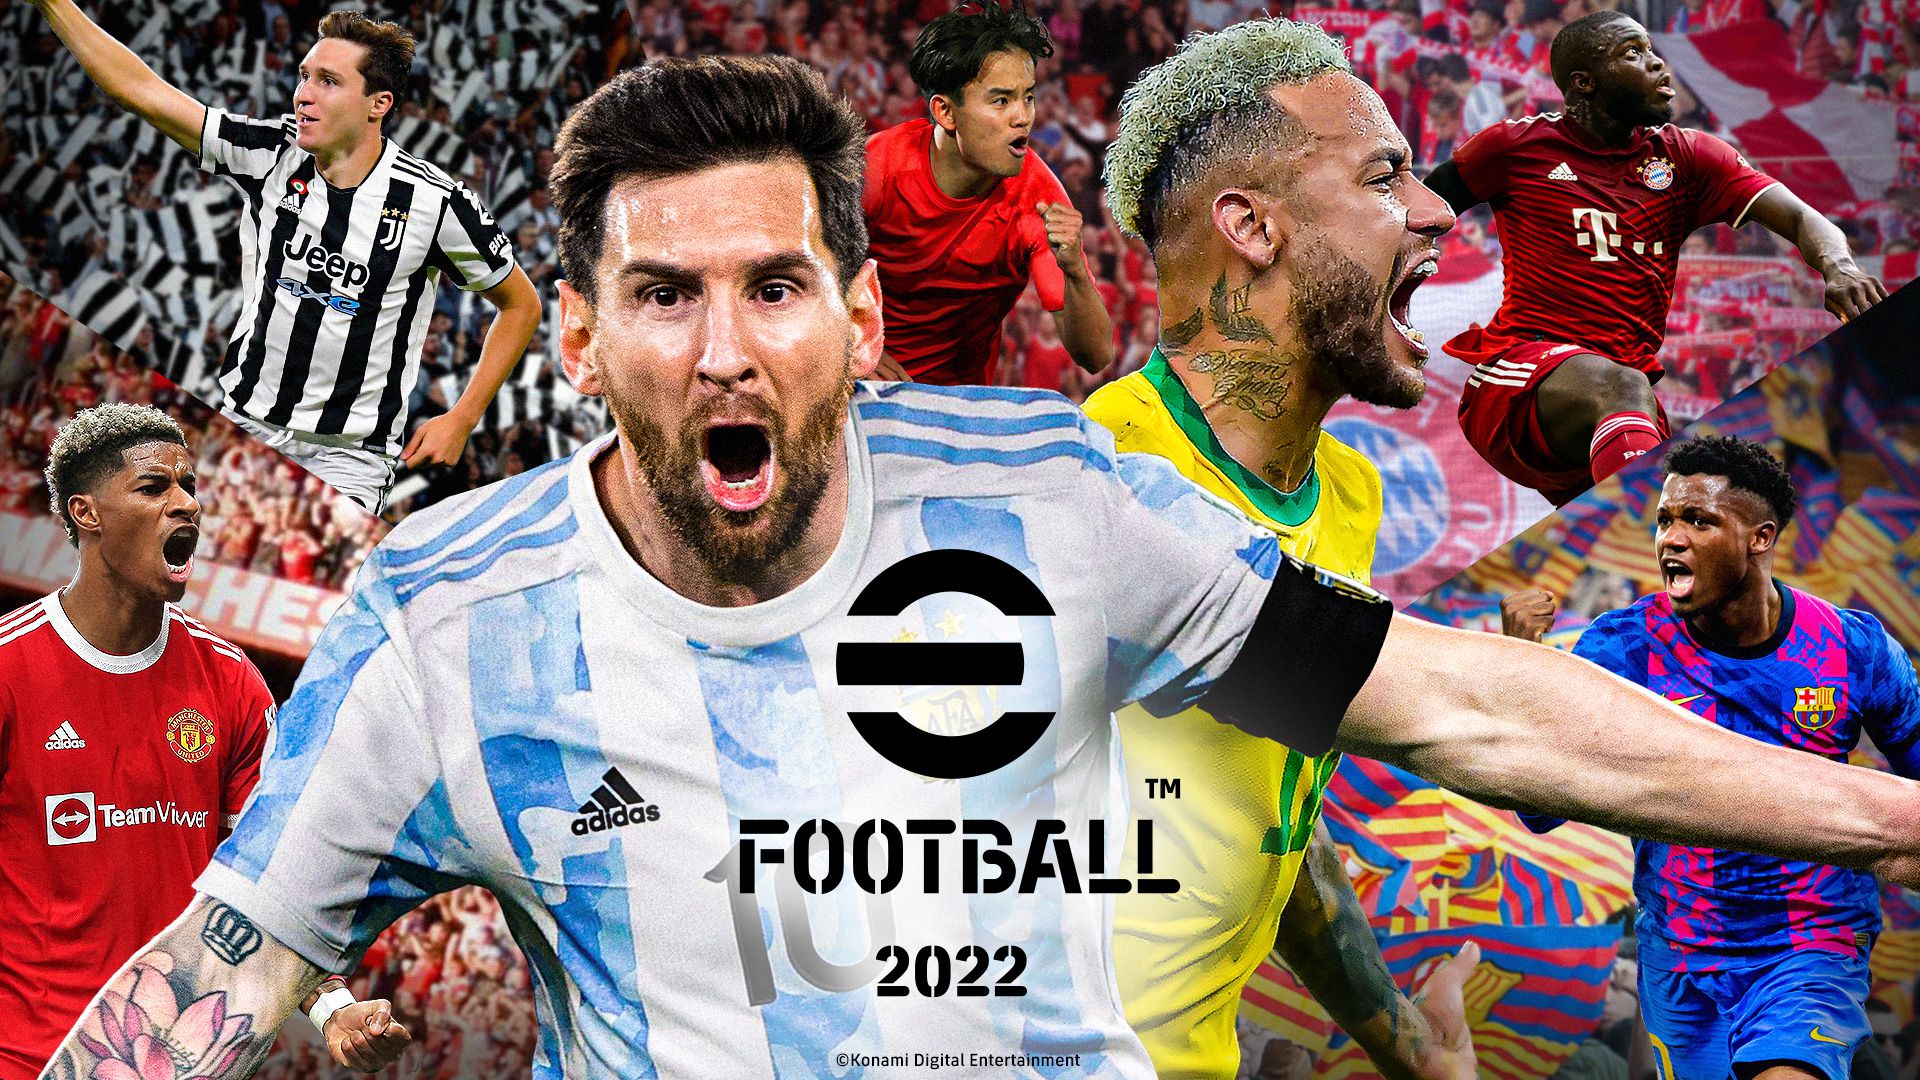 EFootball: Versão 2023 do futebol da Konami chega no fim de agosto